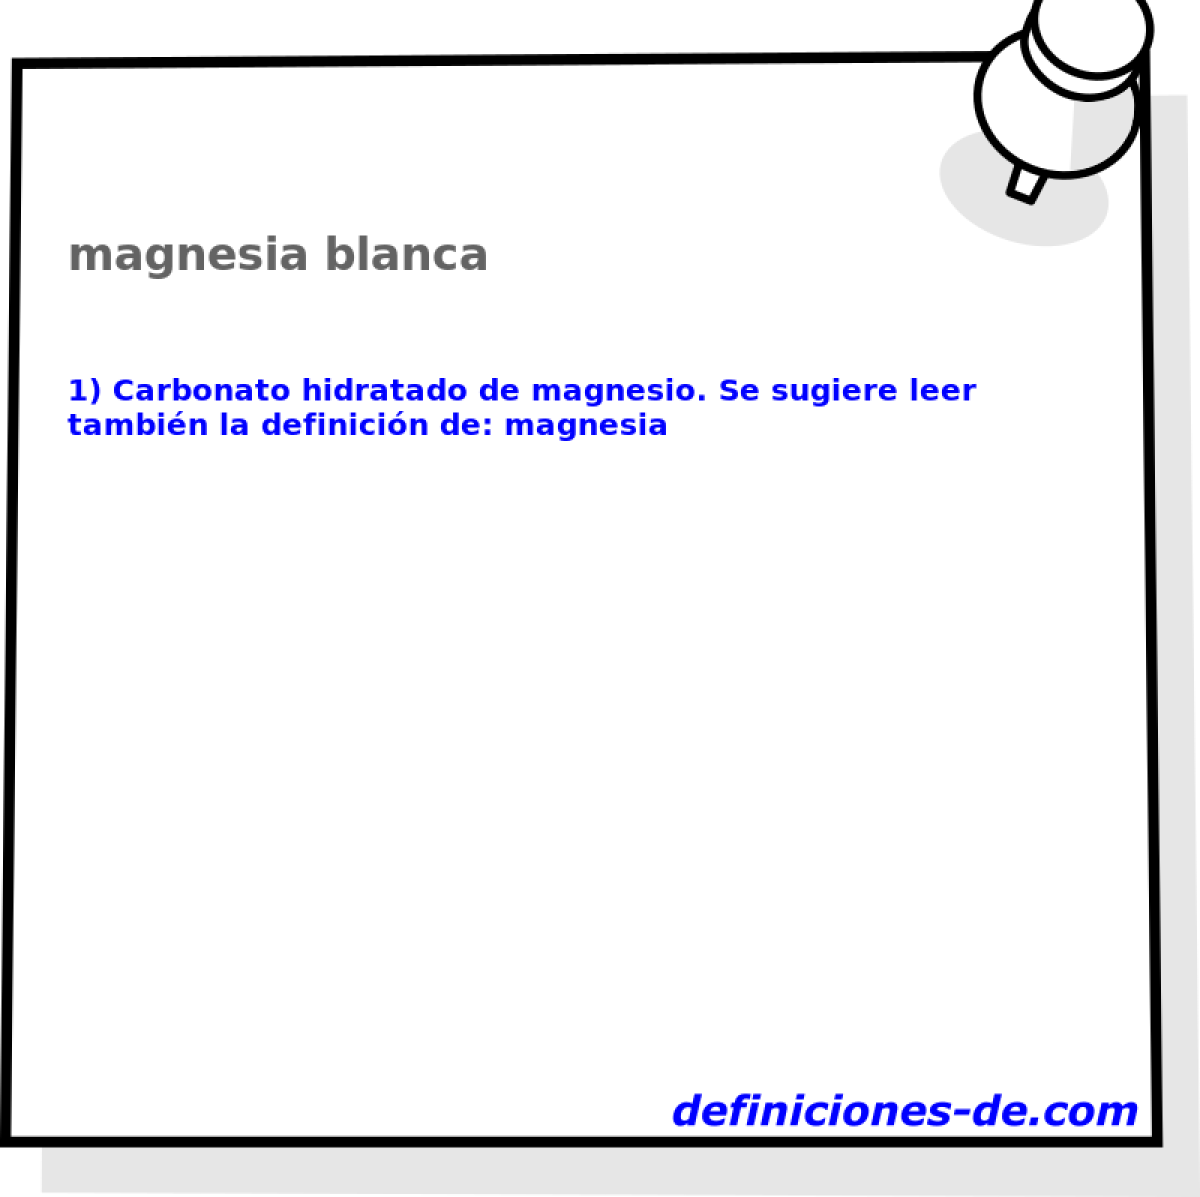 magnesia blanca 